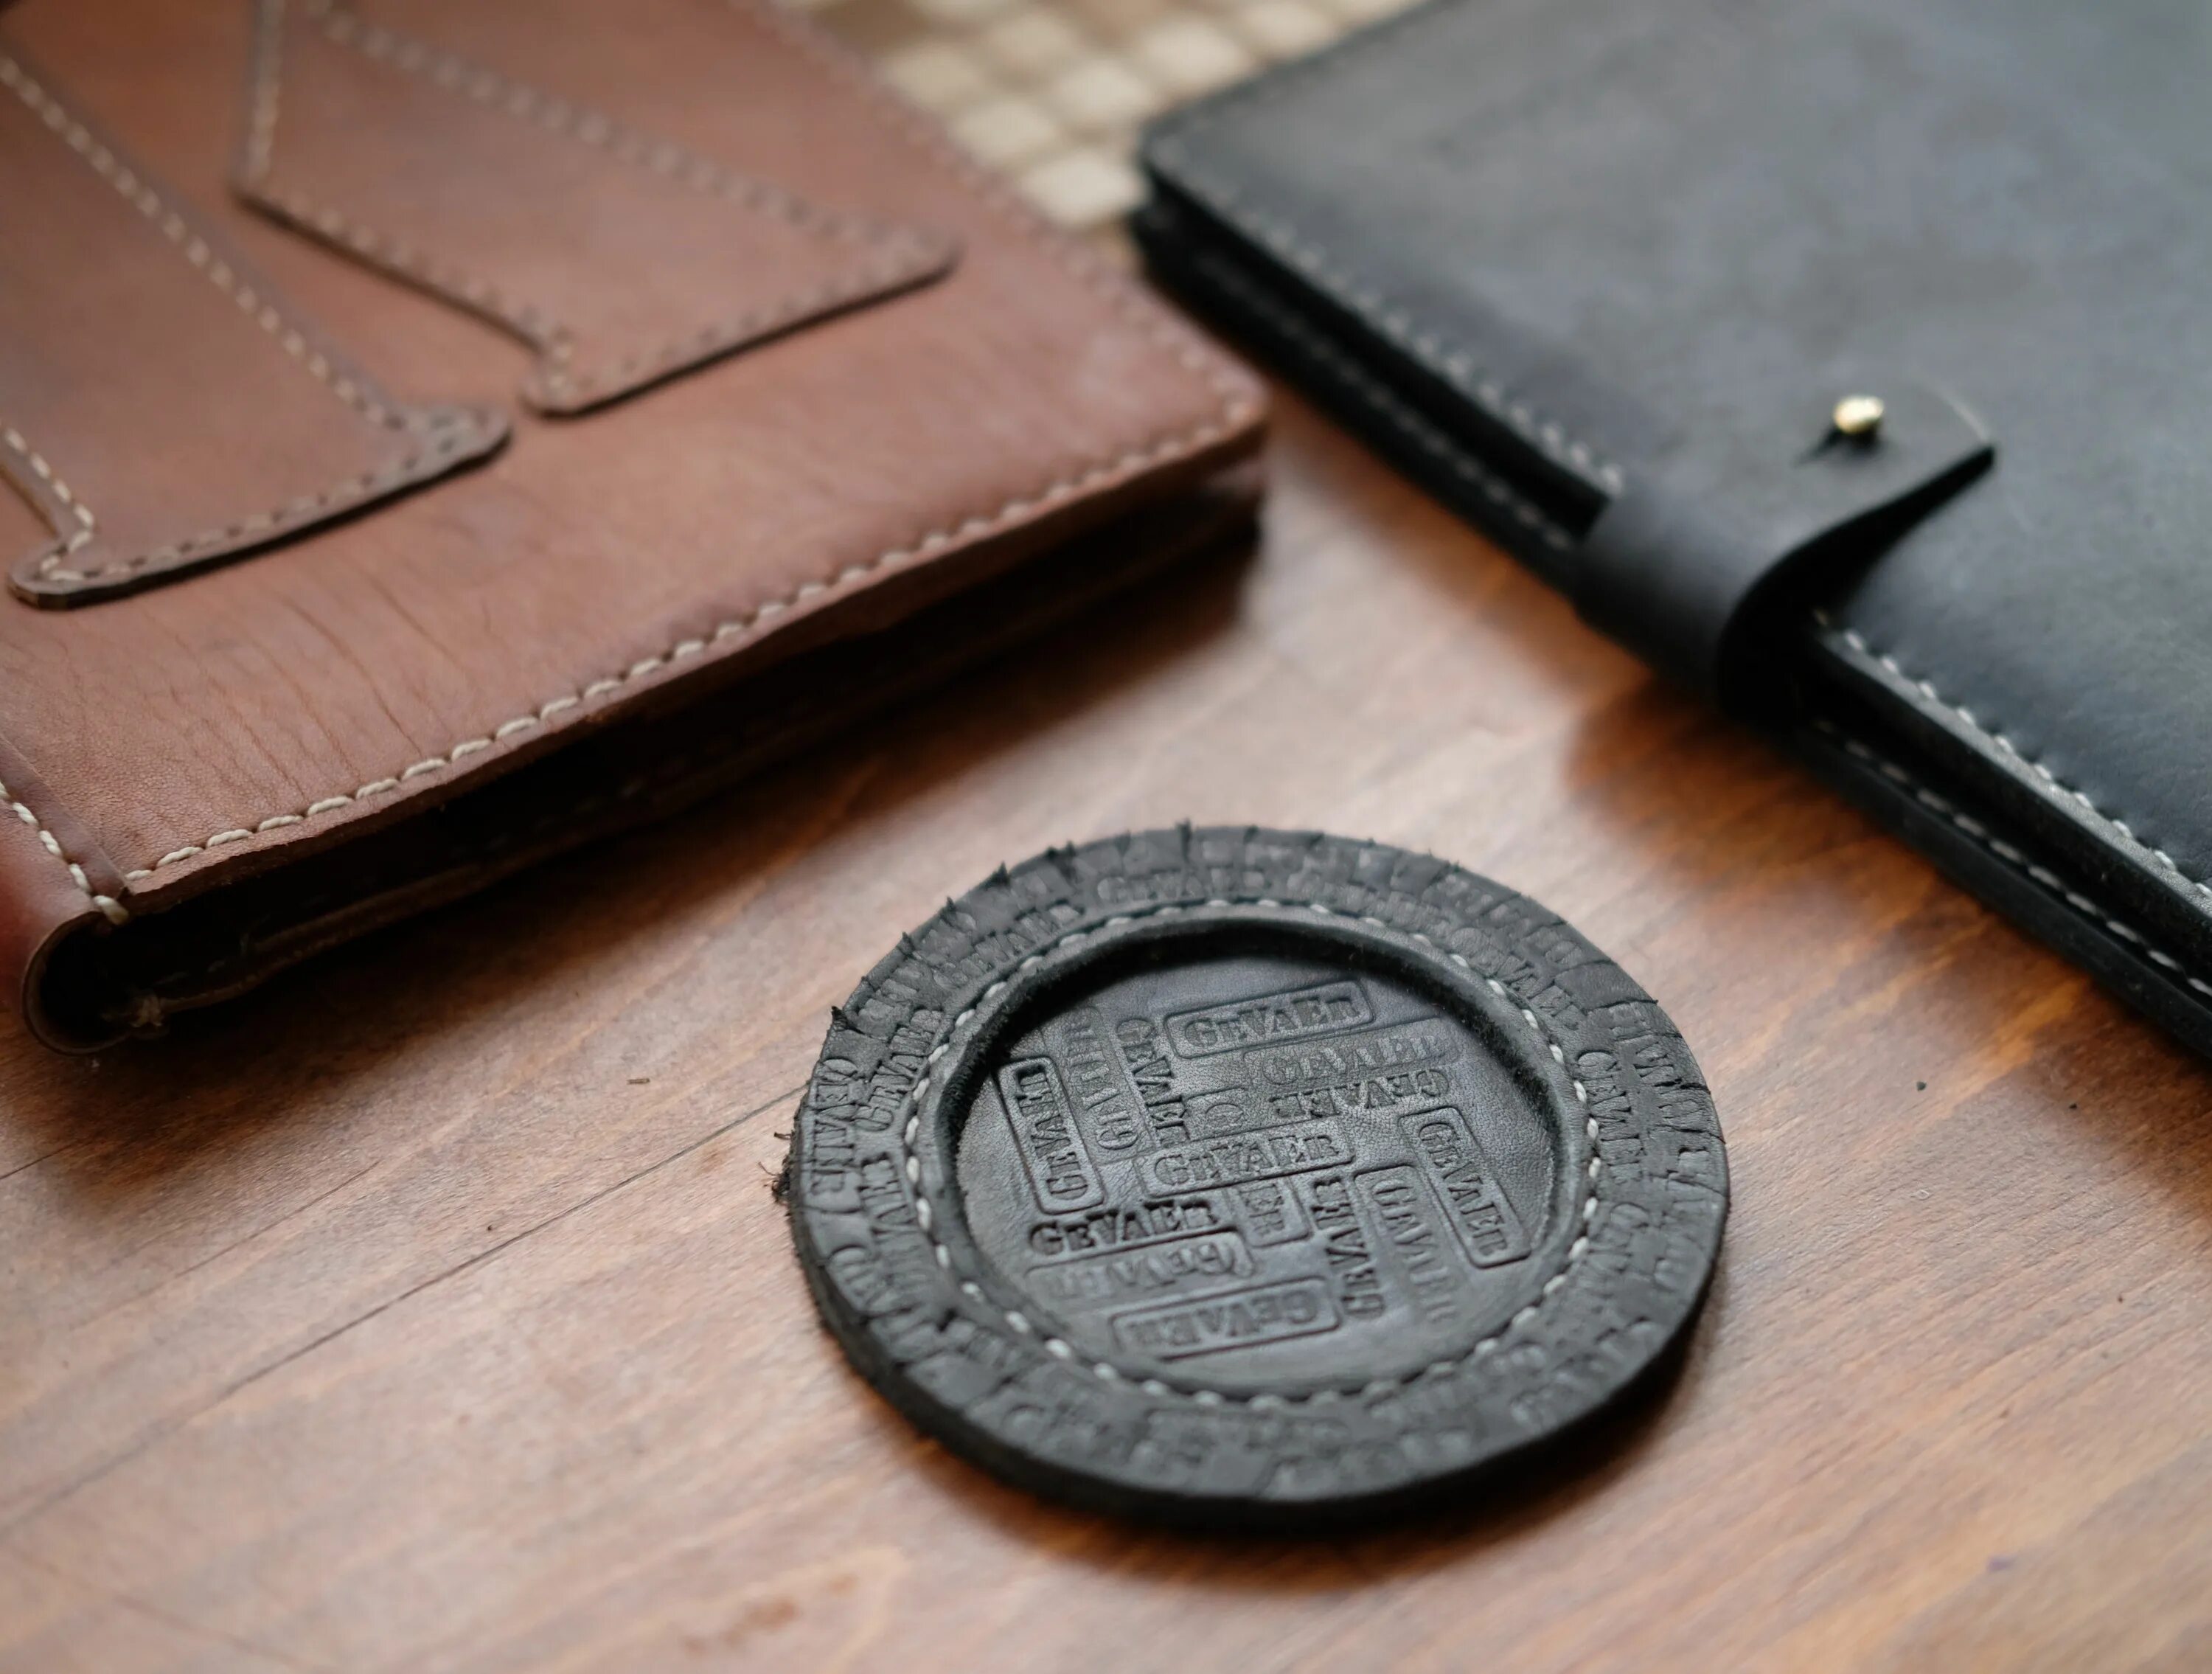 Логотип bespoke Leather. Leather goods produce. First Leather goods. Leather goods